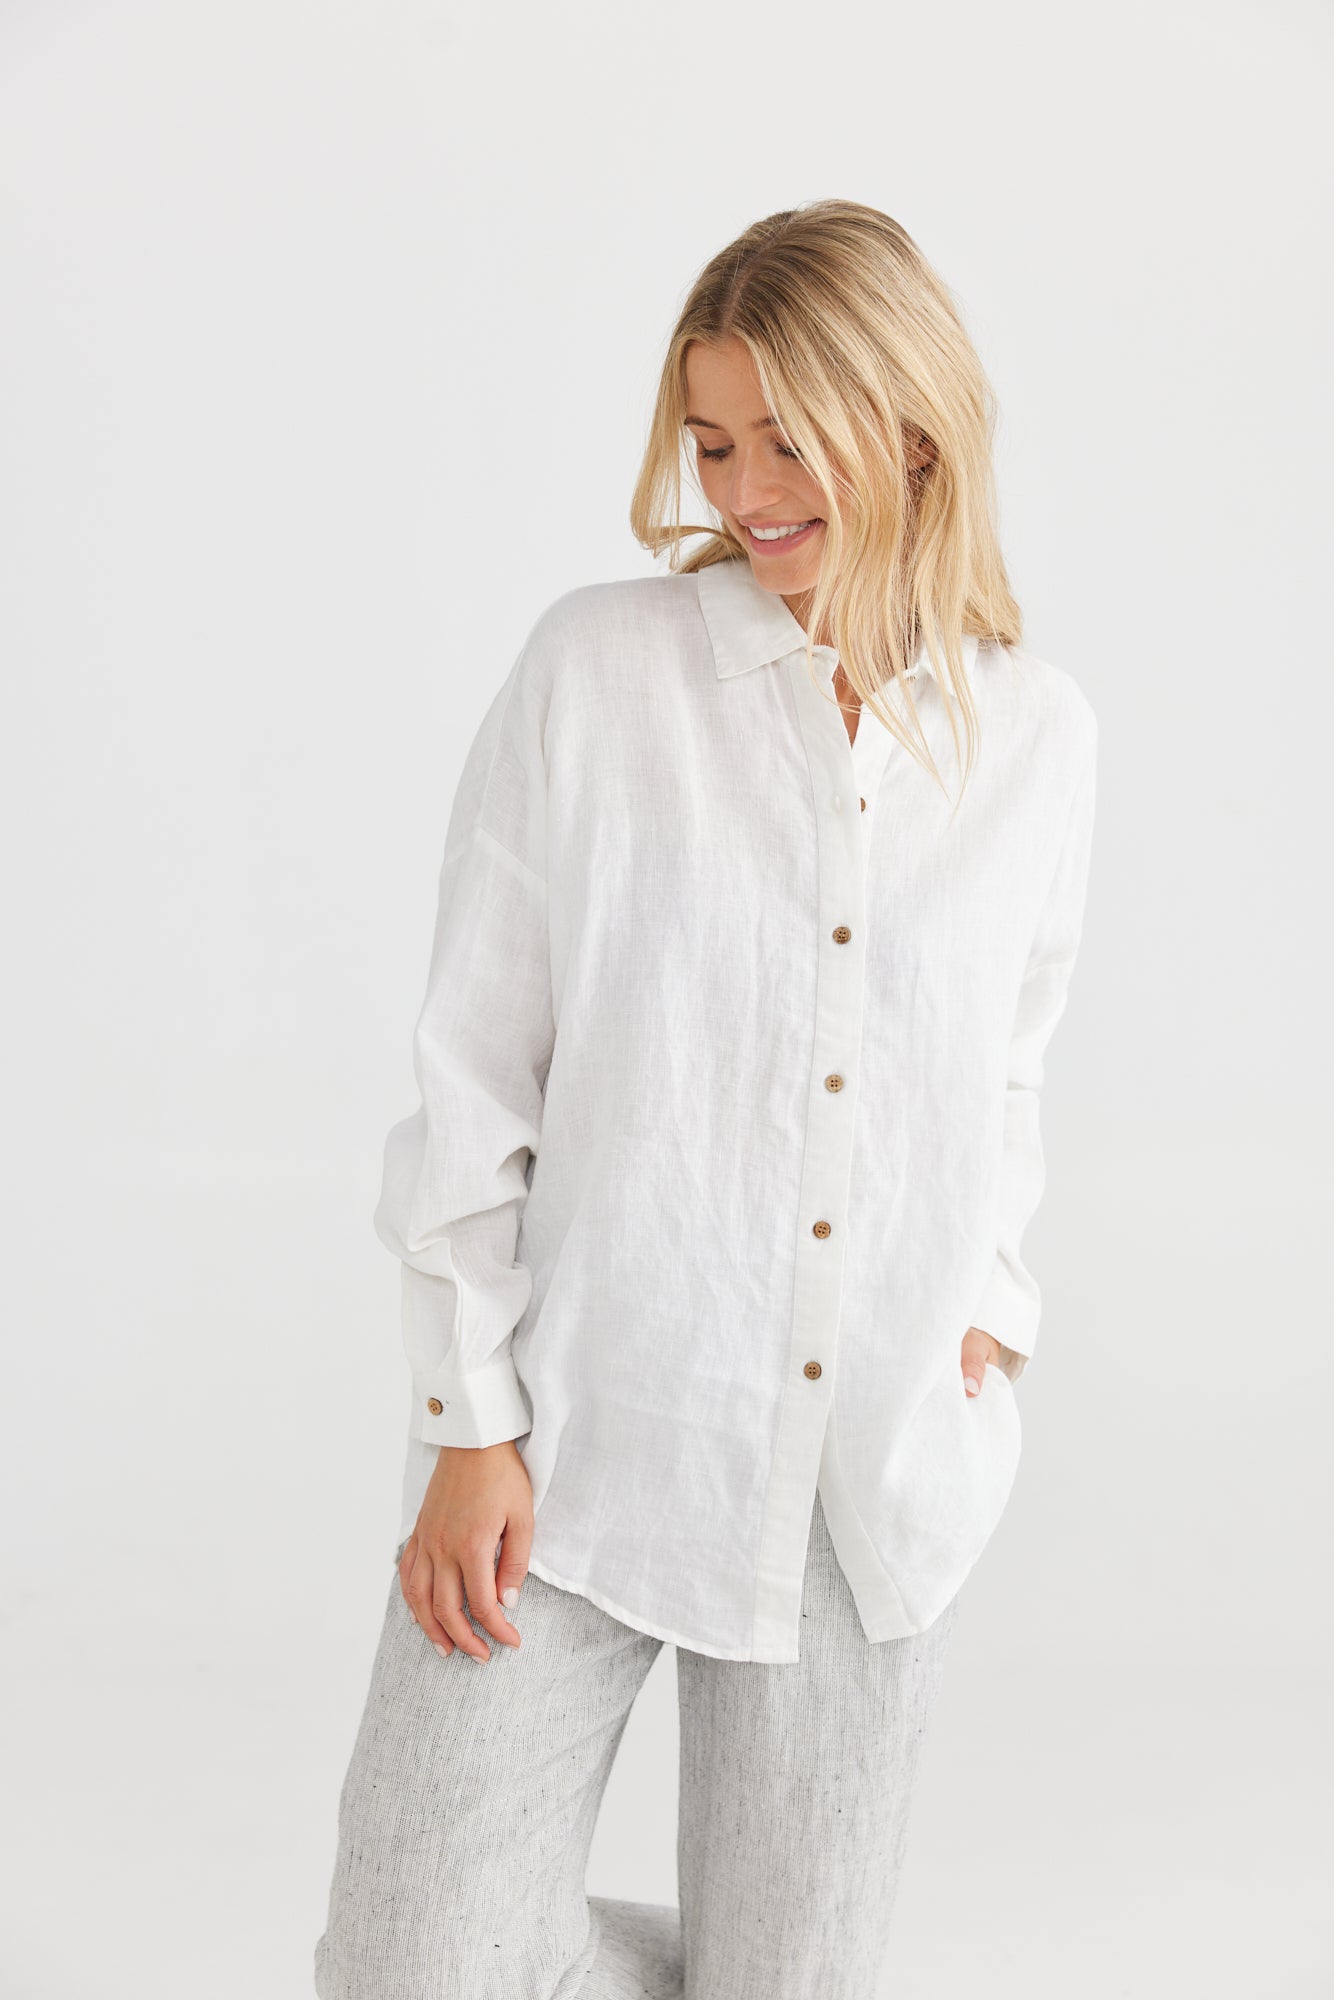 Marrakesh Shirt | White